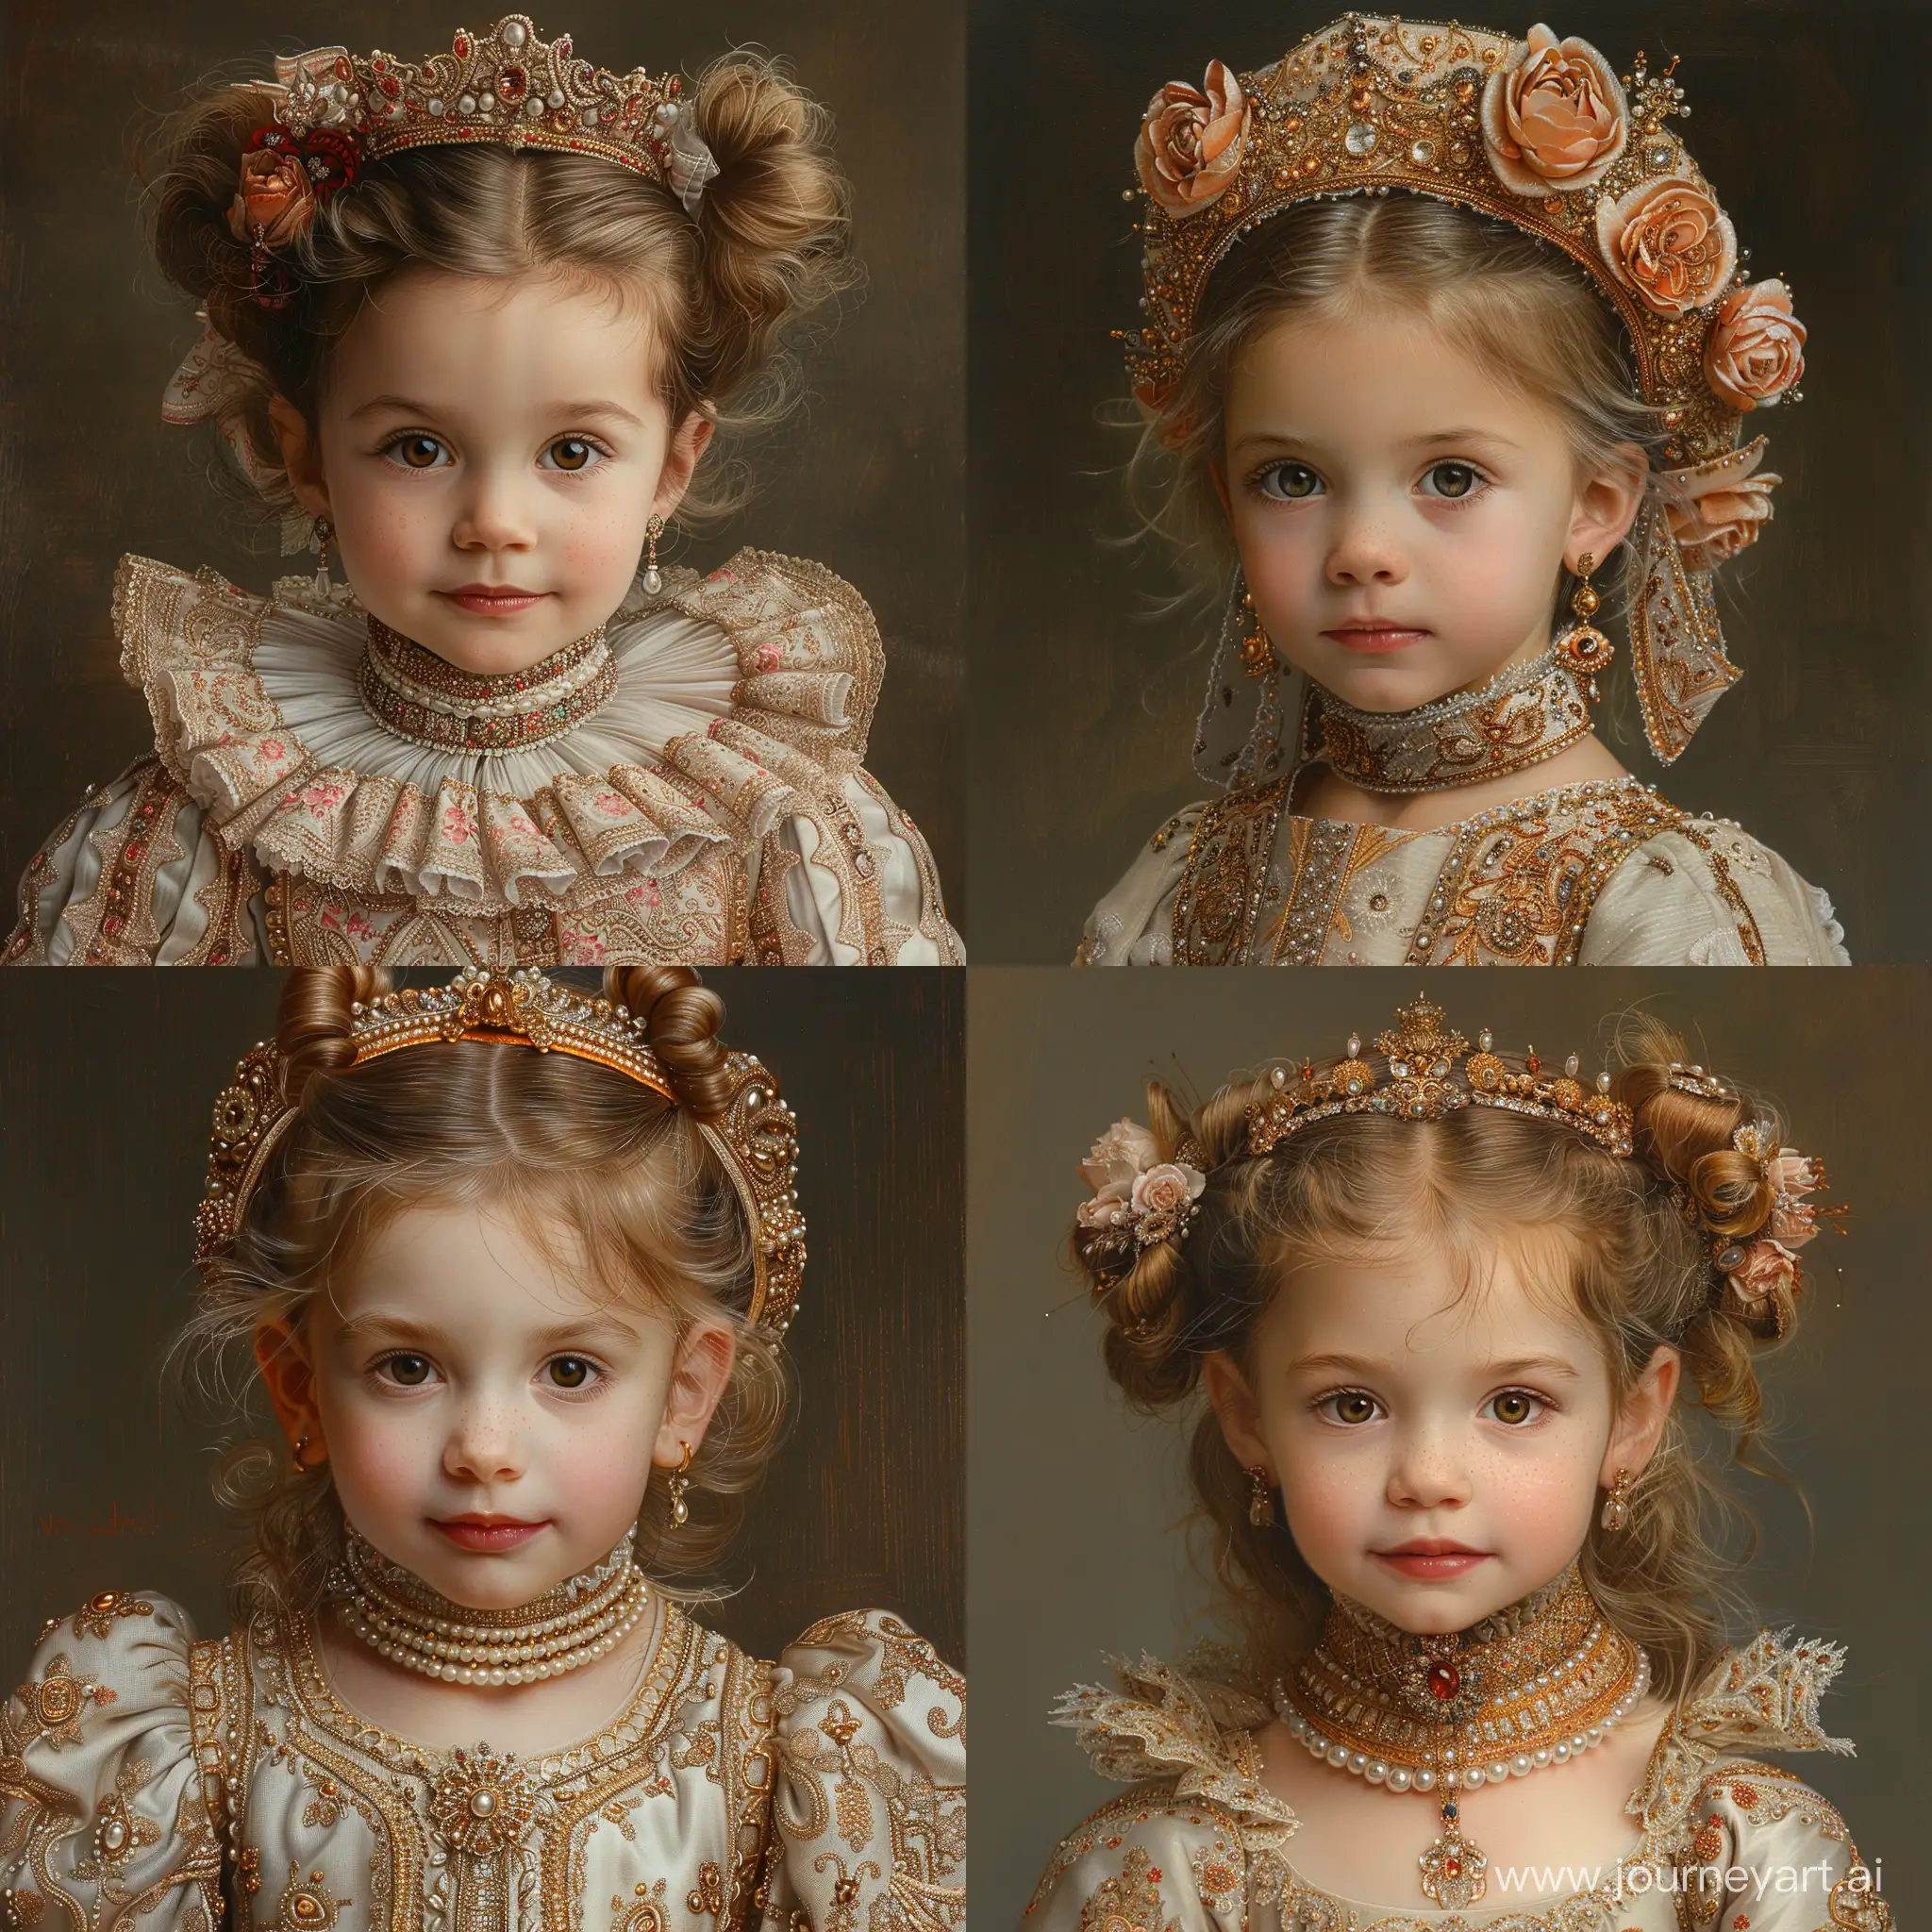 RenaissanceEra-Inspired-Little-Girl-in-Ornate-Costume-Oil-Portrait